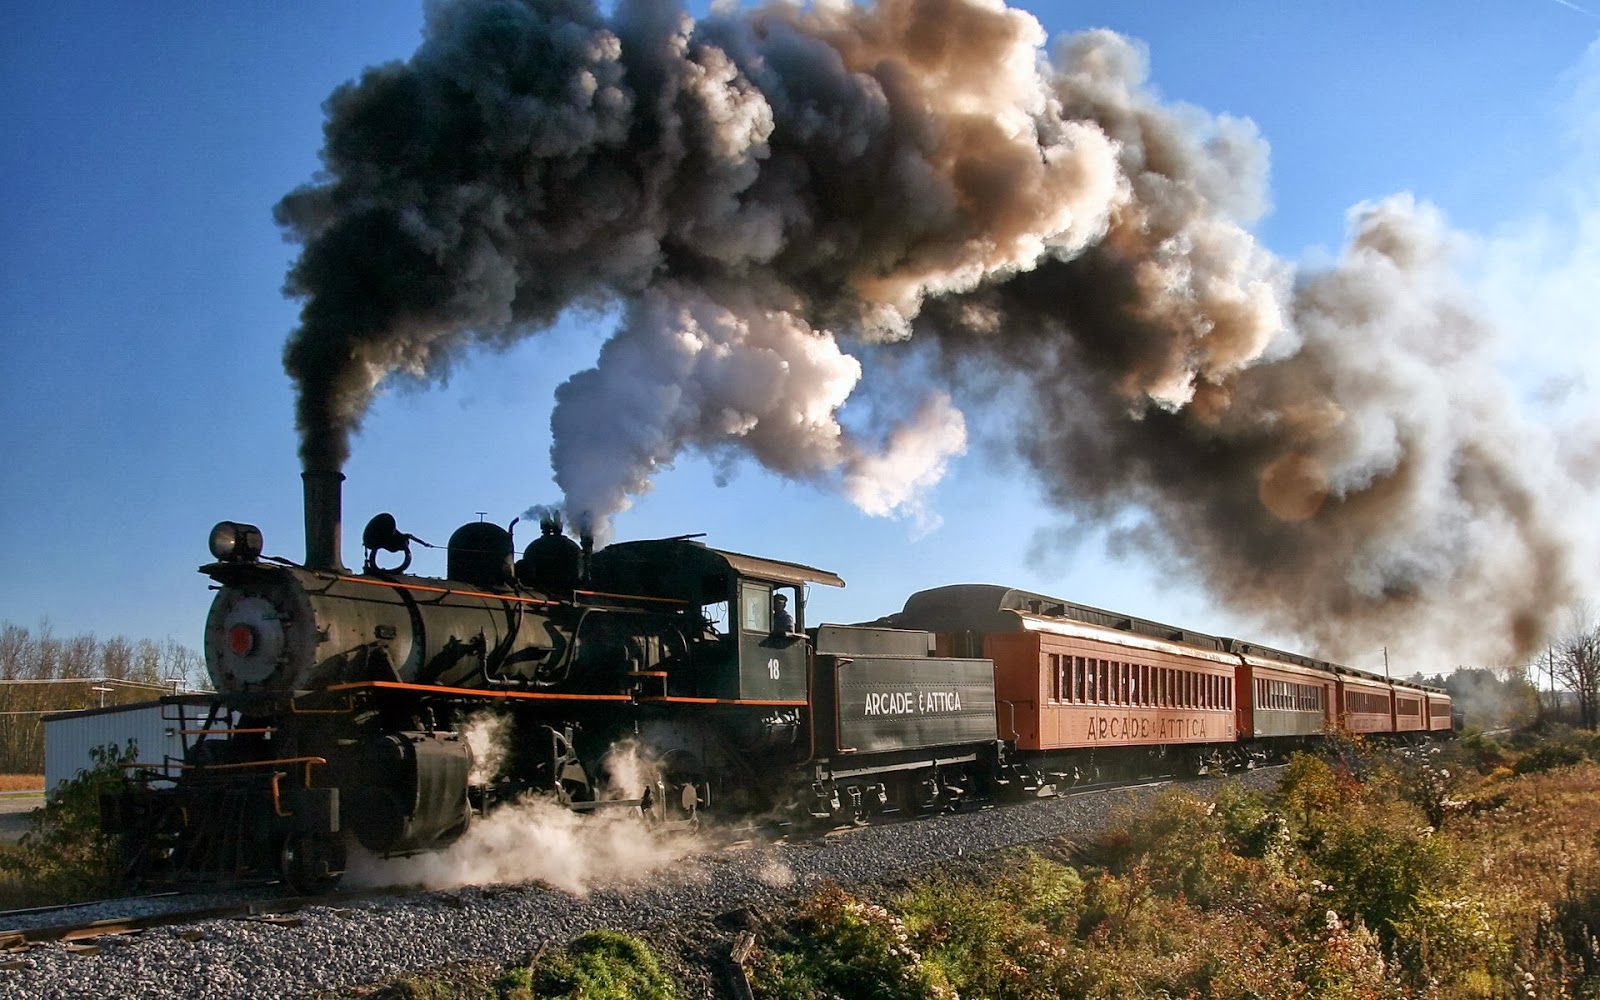 fond d'écran train hd,vapeur,machine à vapeur,fumée,train,matériel roulant